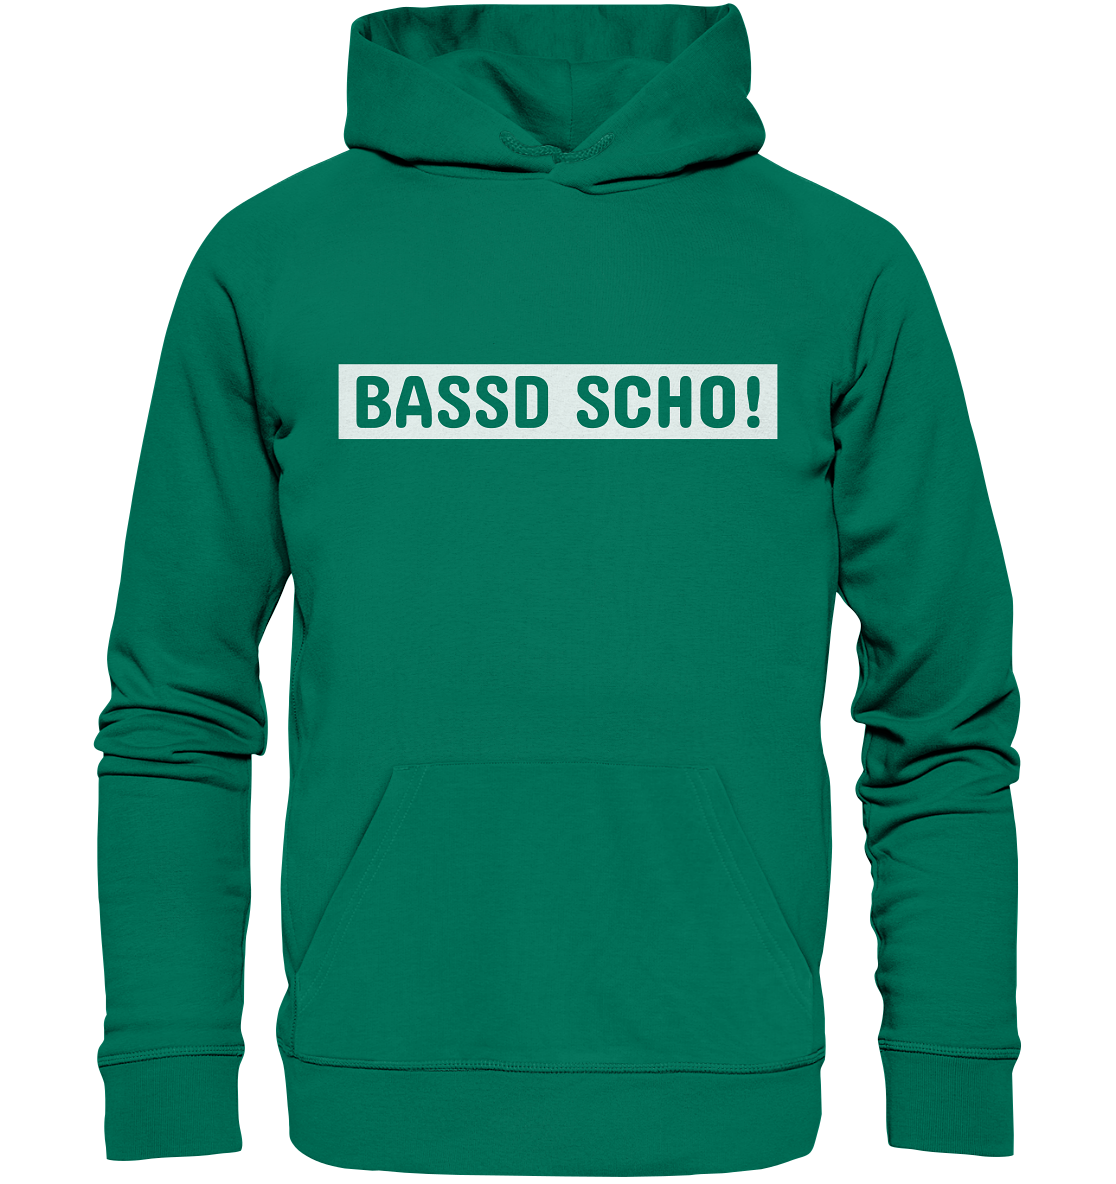 #BASSDSCHO! - Organic Hoodie